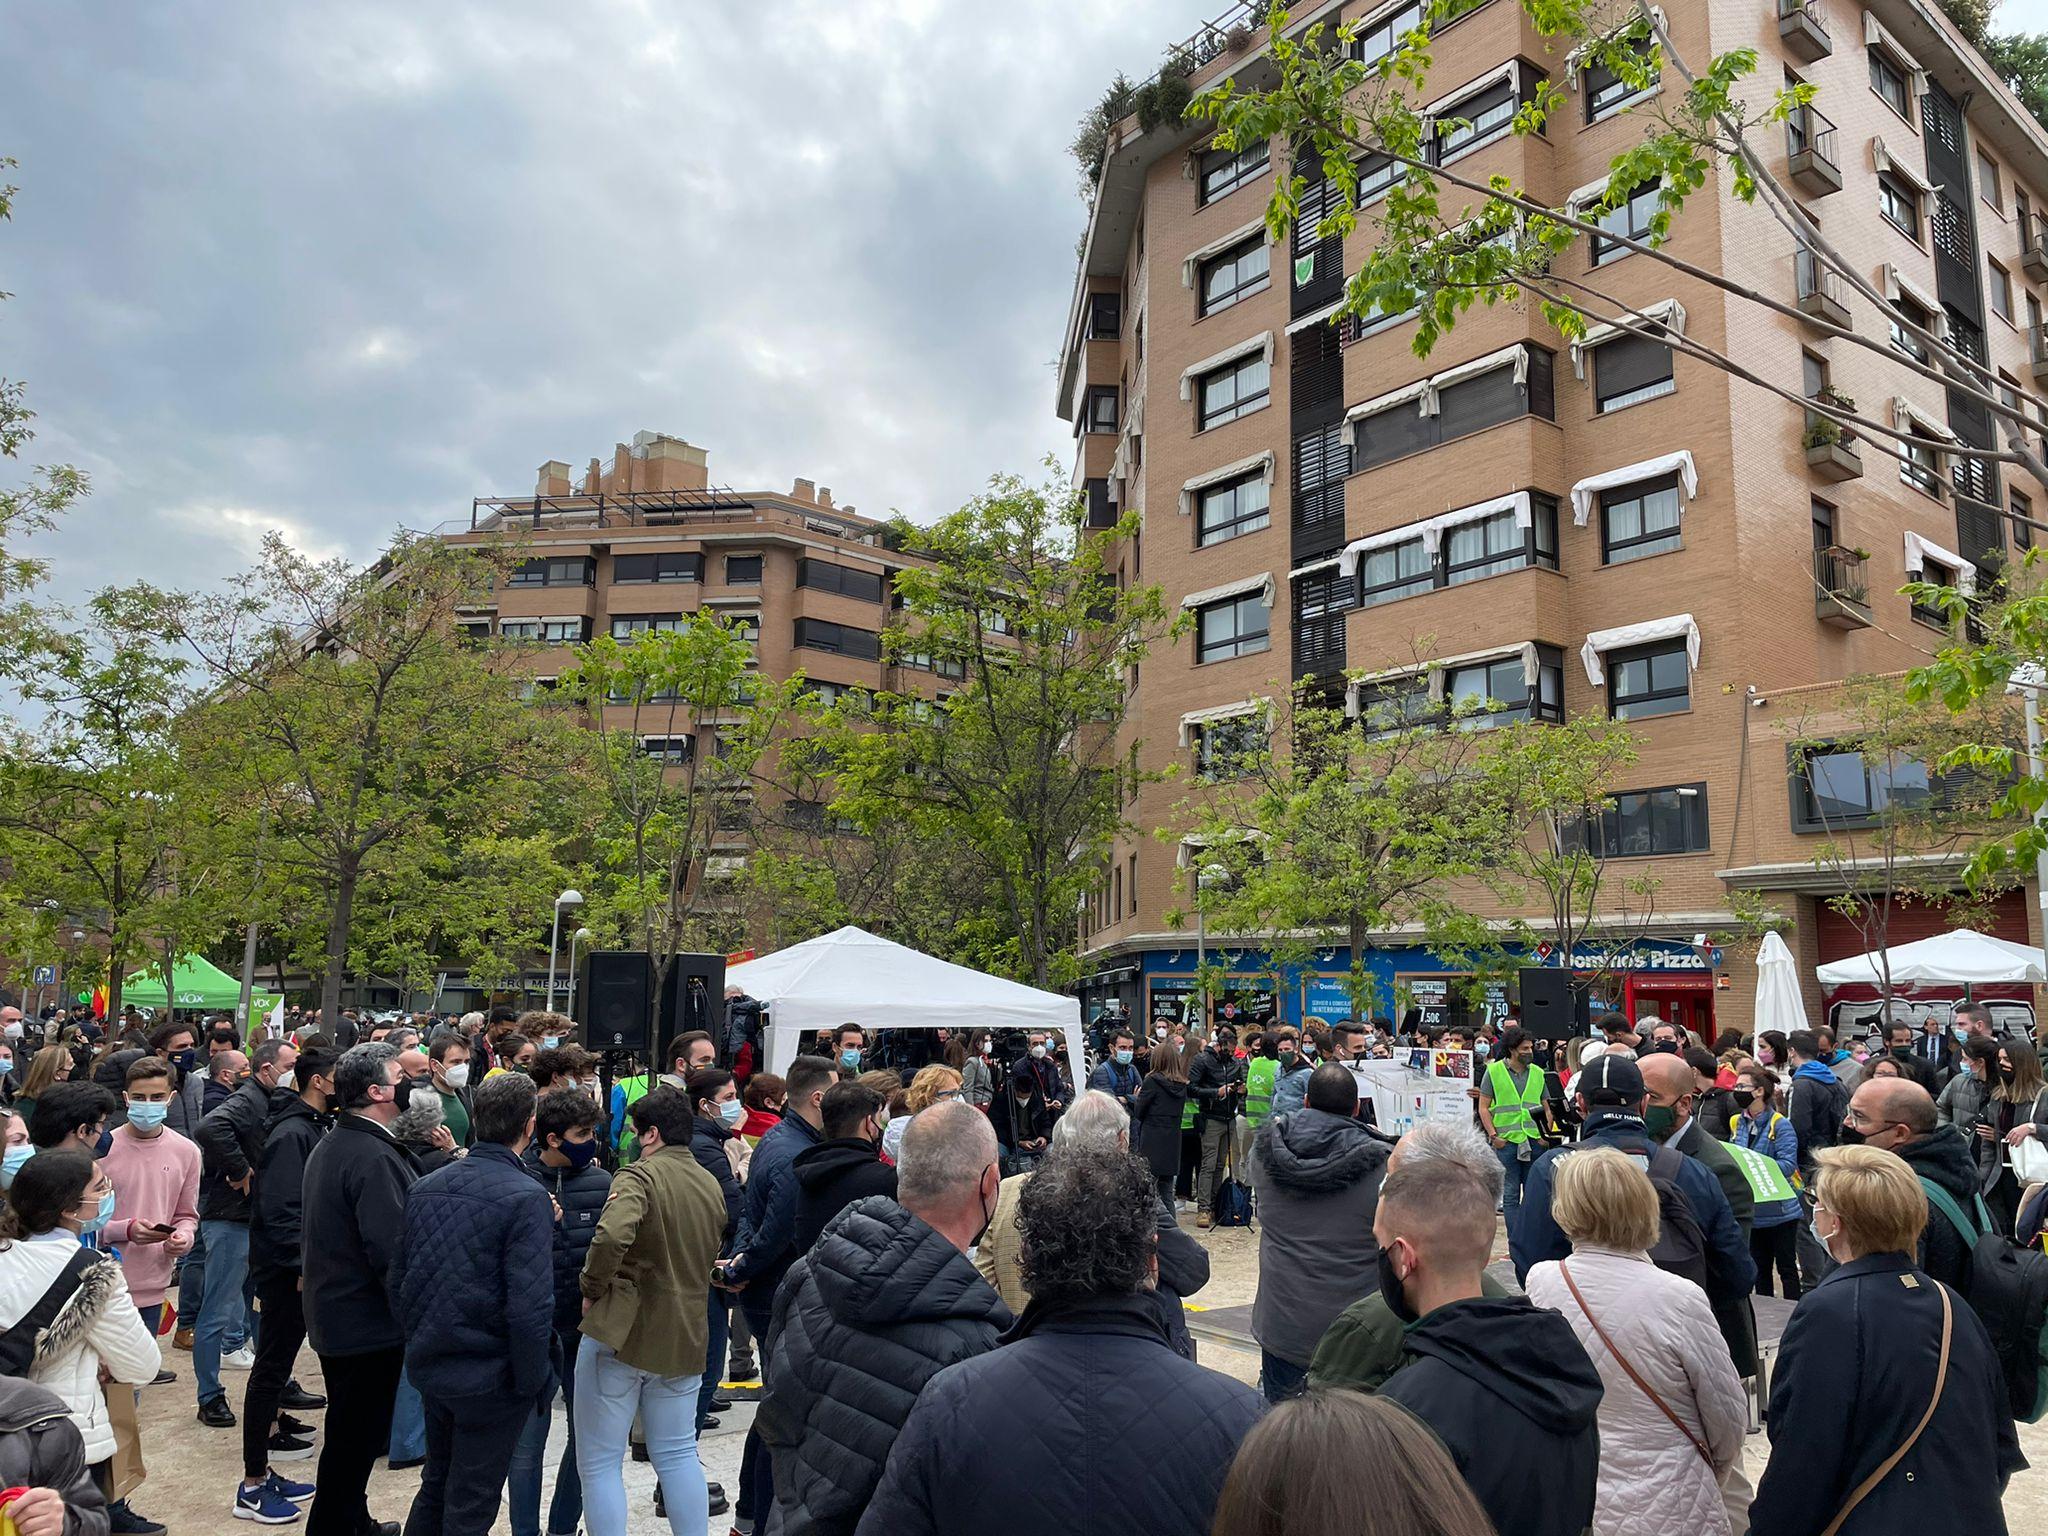 Vox organiza un acto político en Pacífico, Madrid